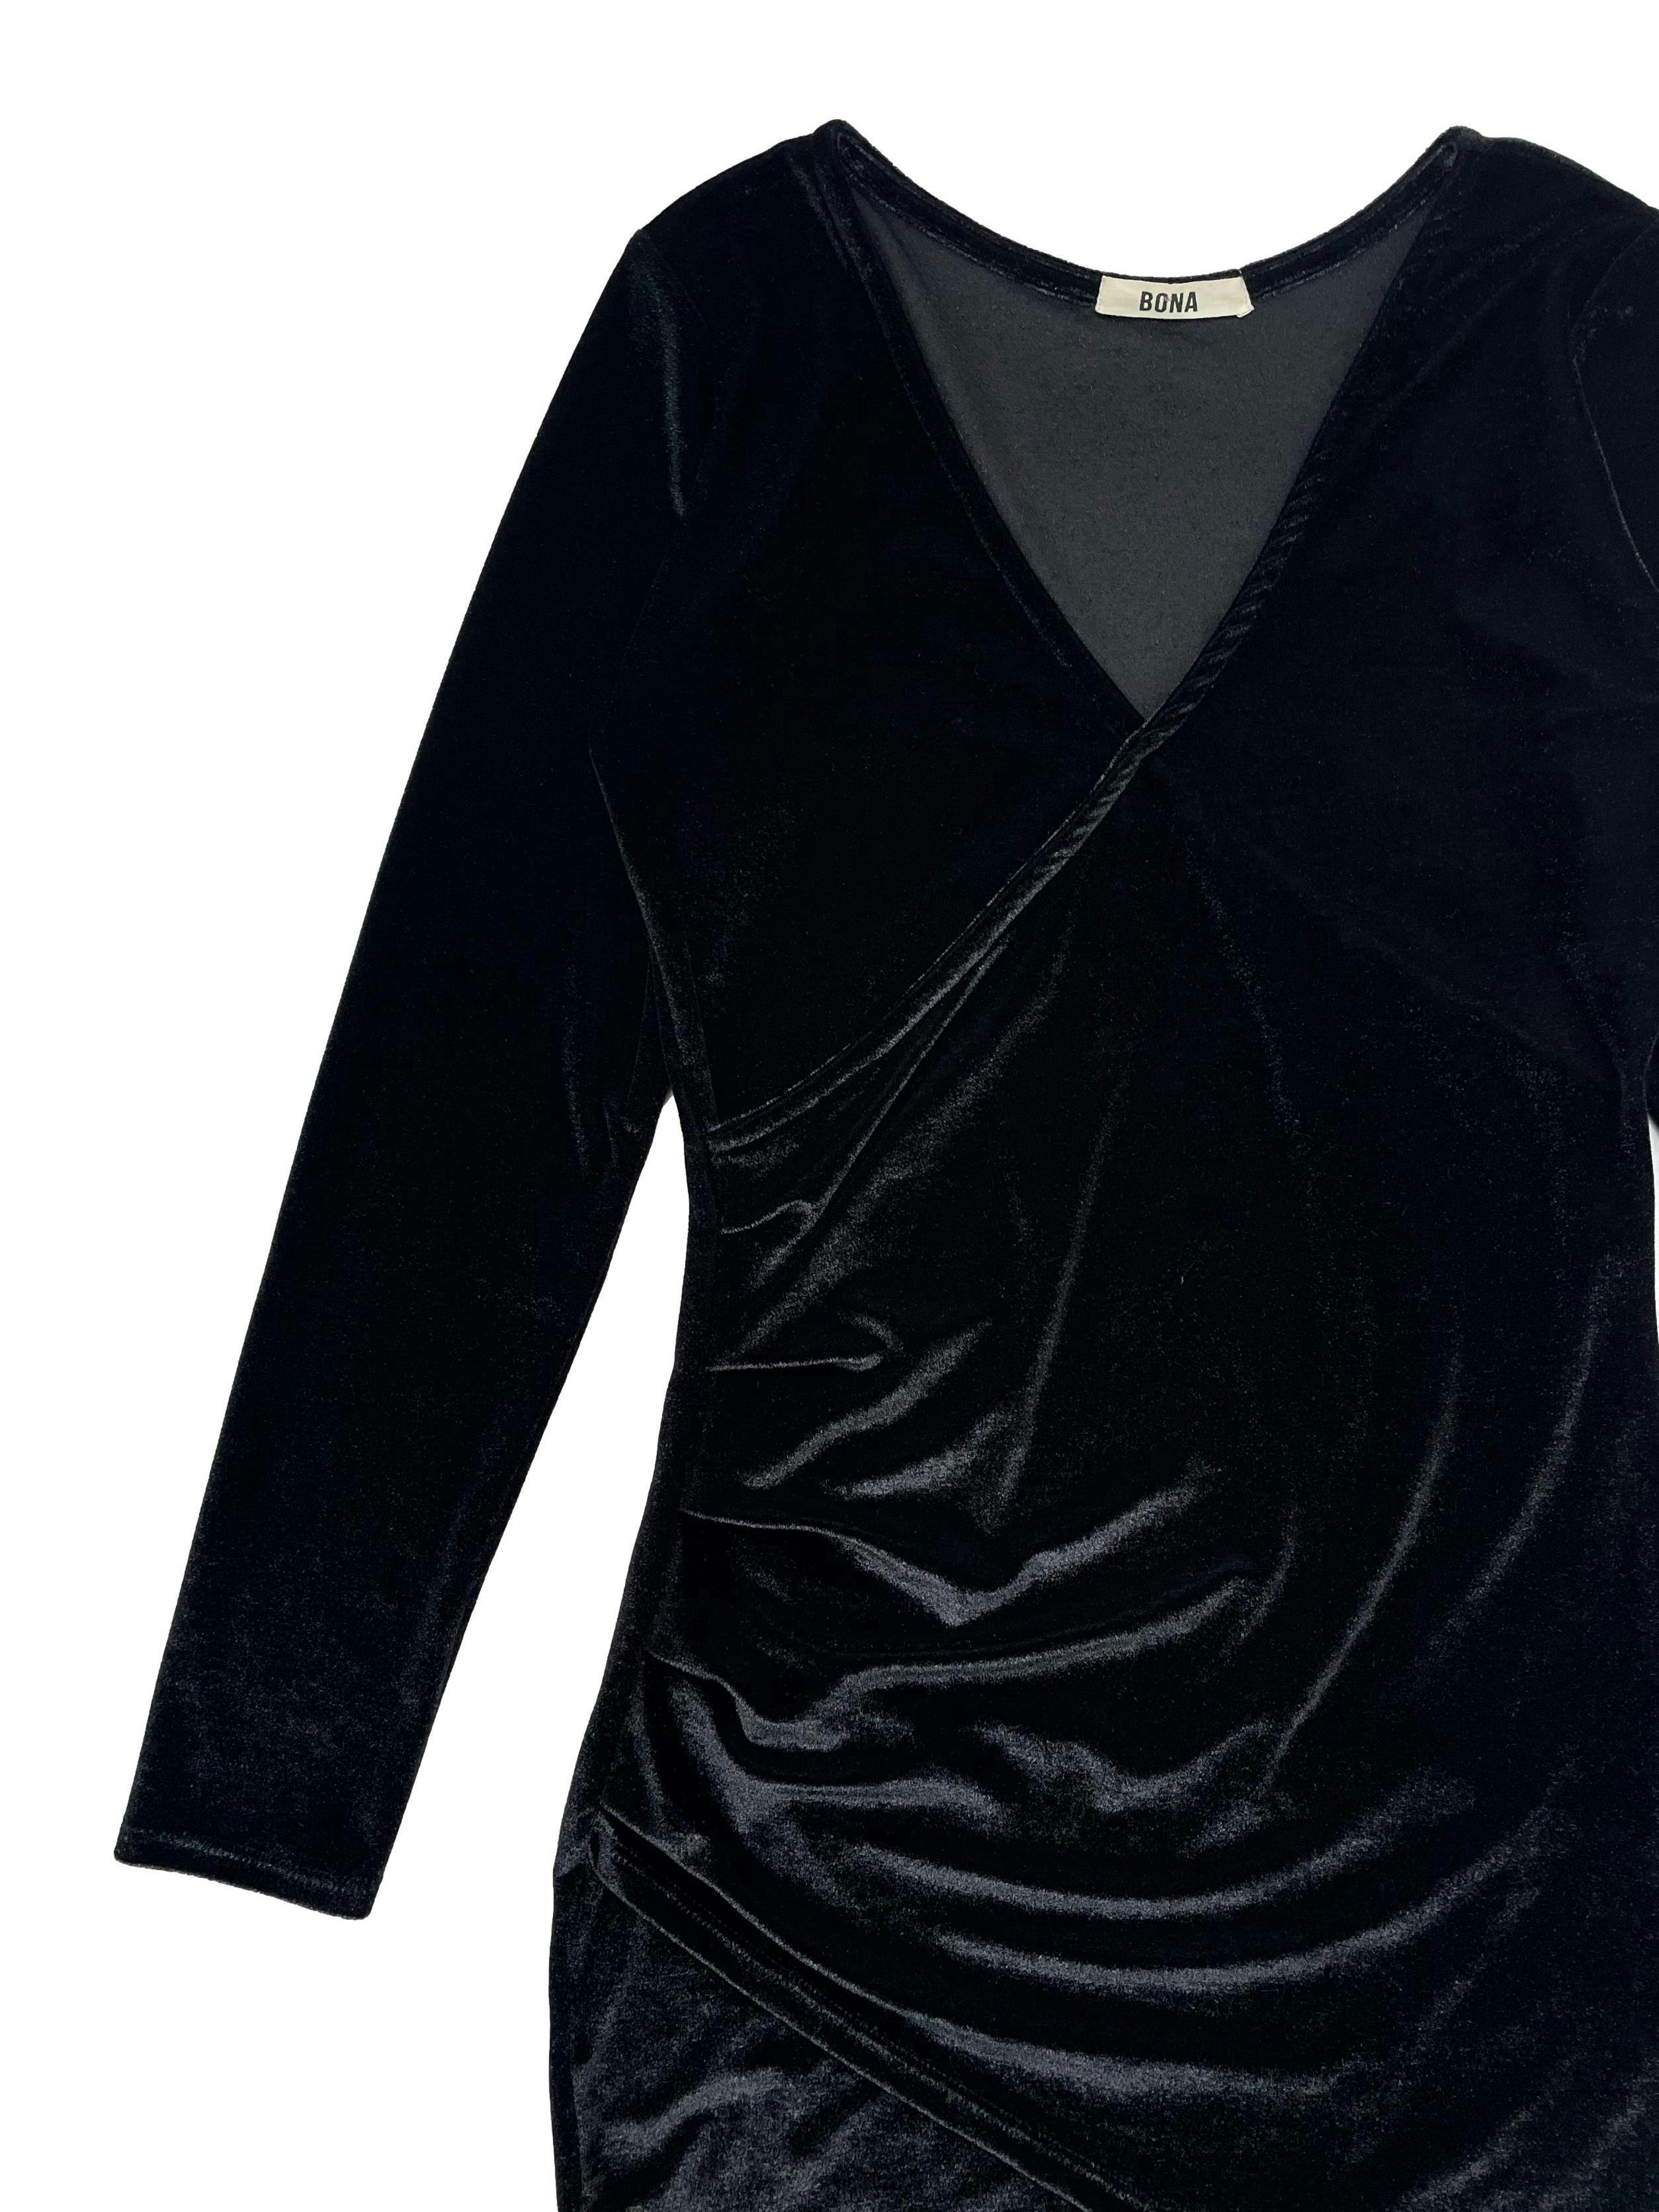 Vestido Bona negro de terciopelo brillante,modelo cruzado con pliegues laterales y escote en V. Busto 78cm, Largo 82cm.